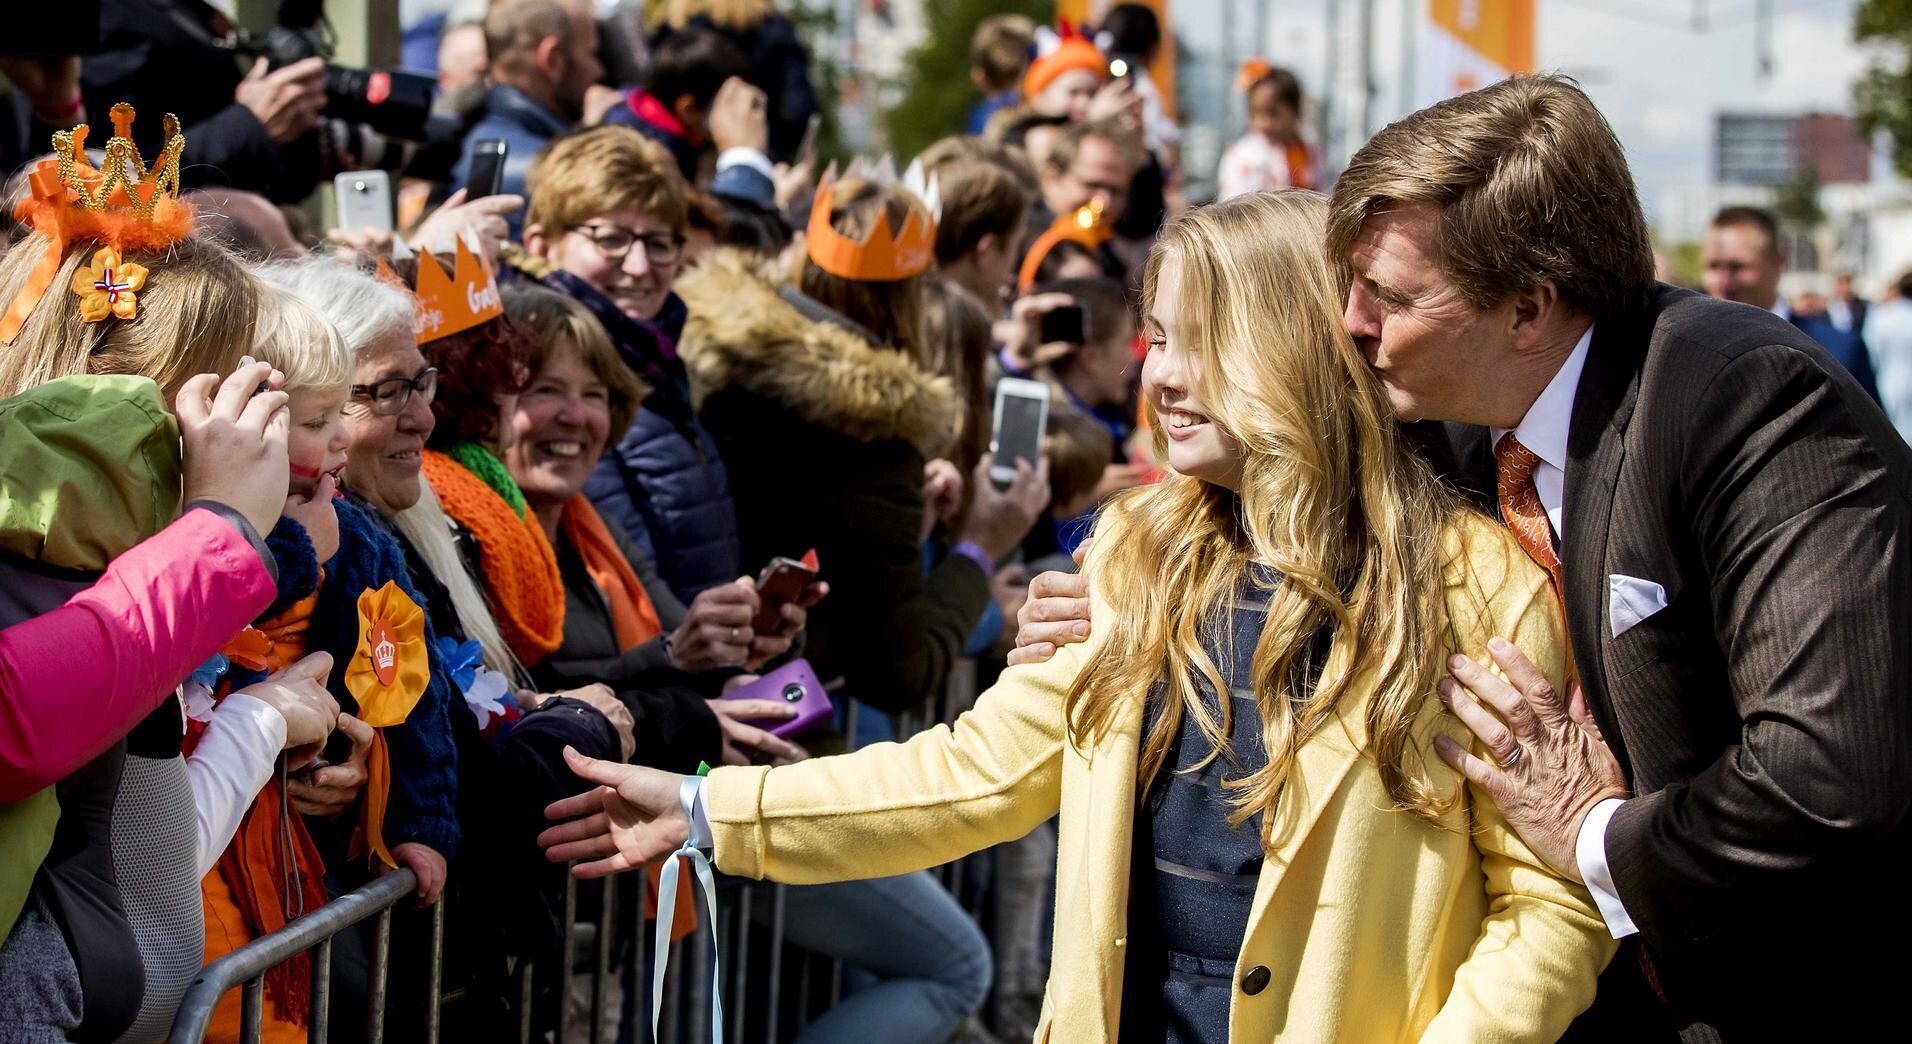 Teruglezen - Liveblog Koningsdag: Koningsdag Tilburg was 'drukste tot nu toe'